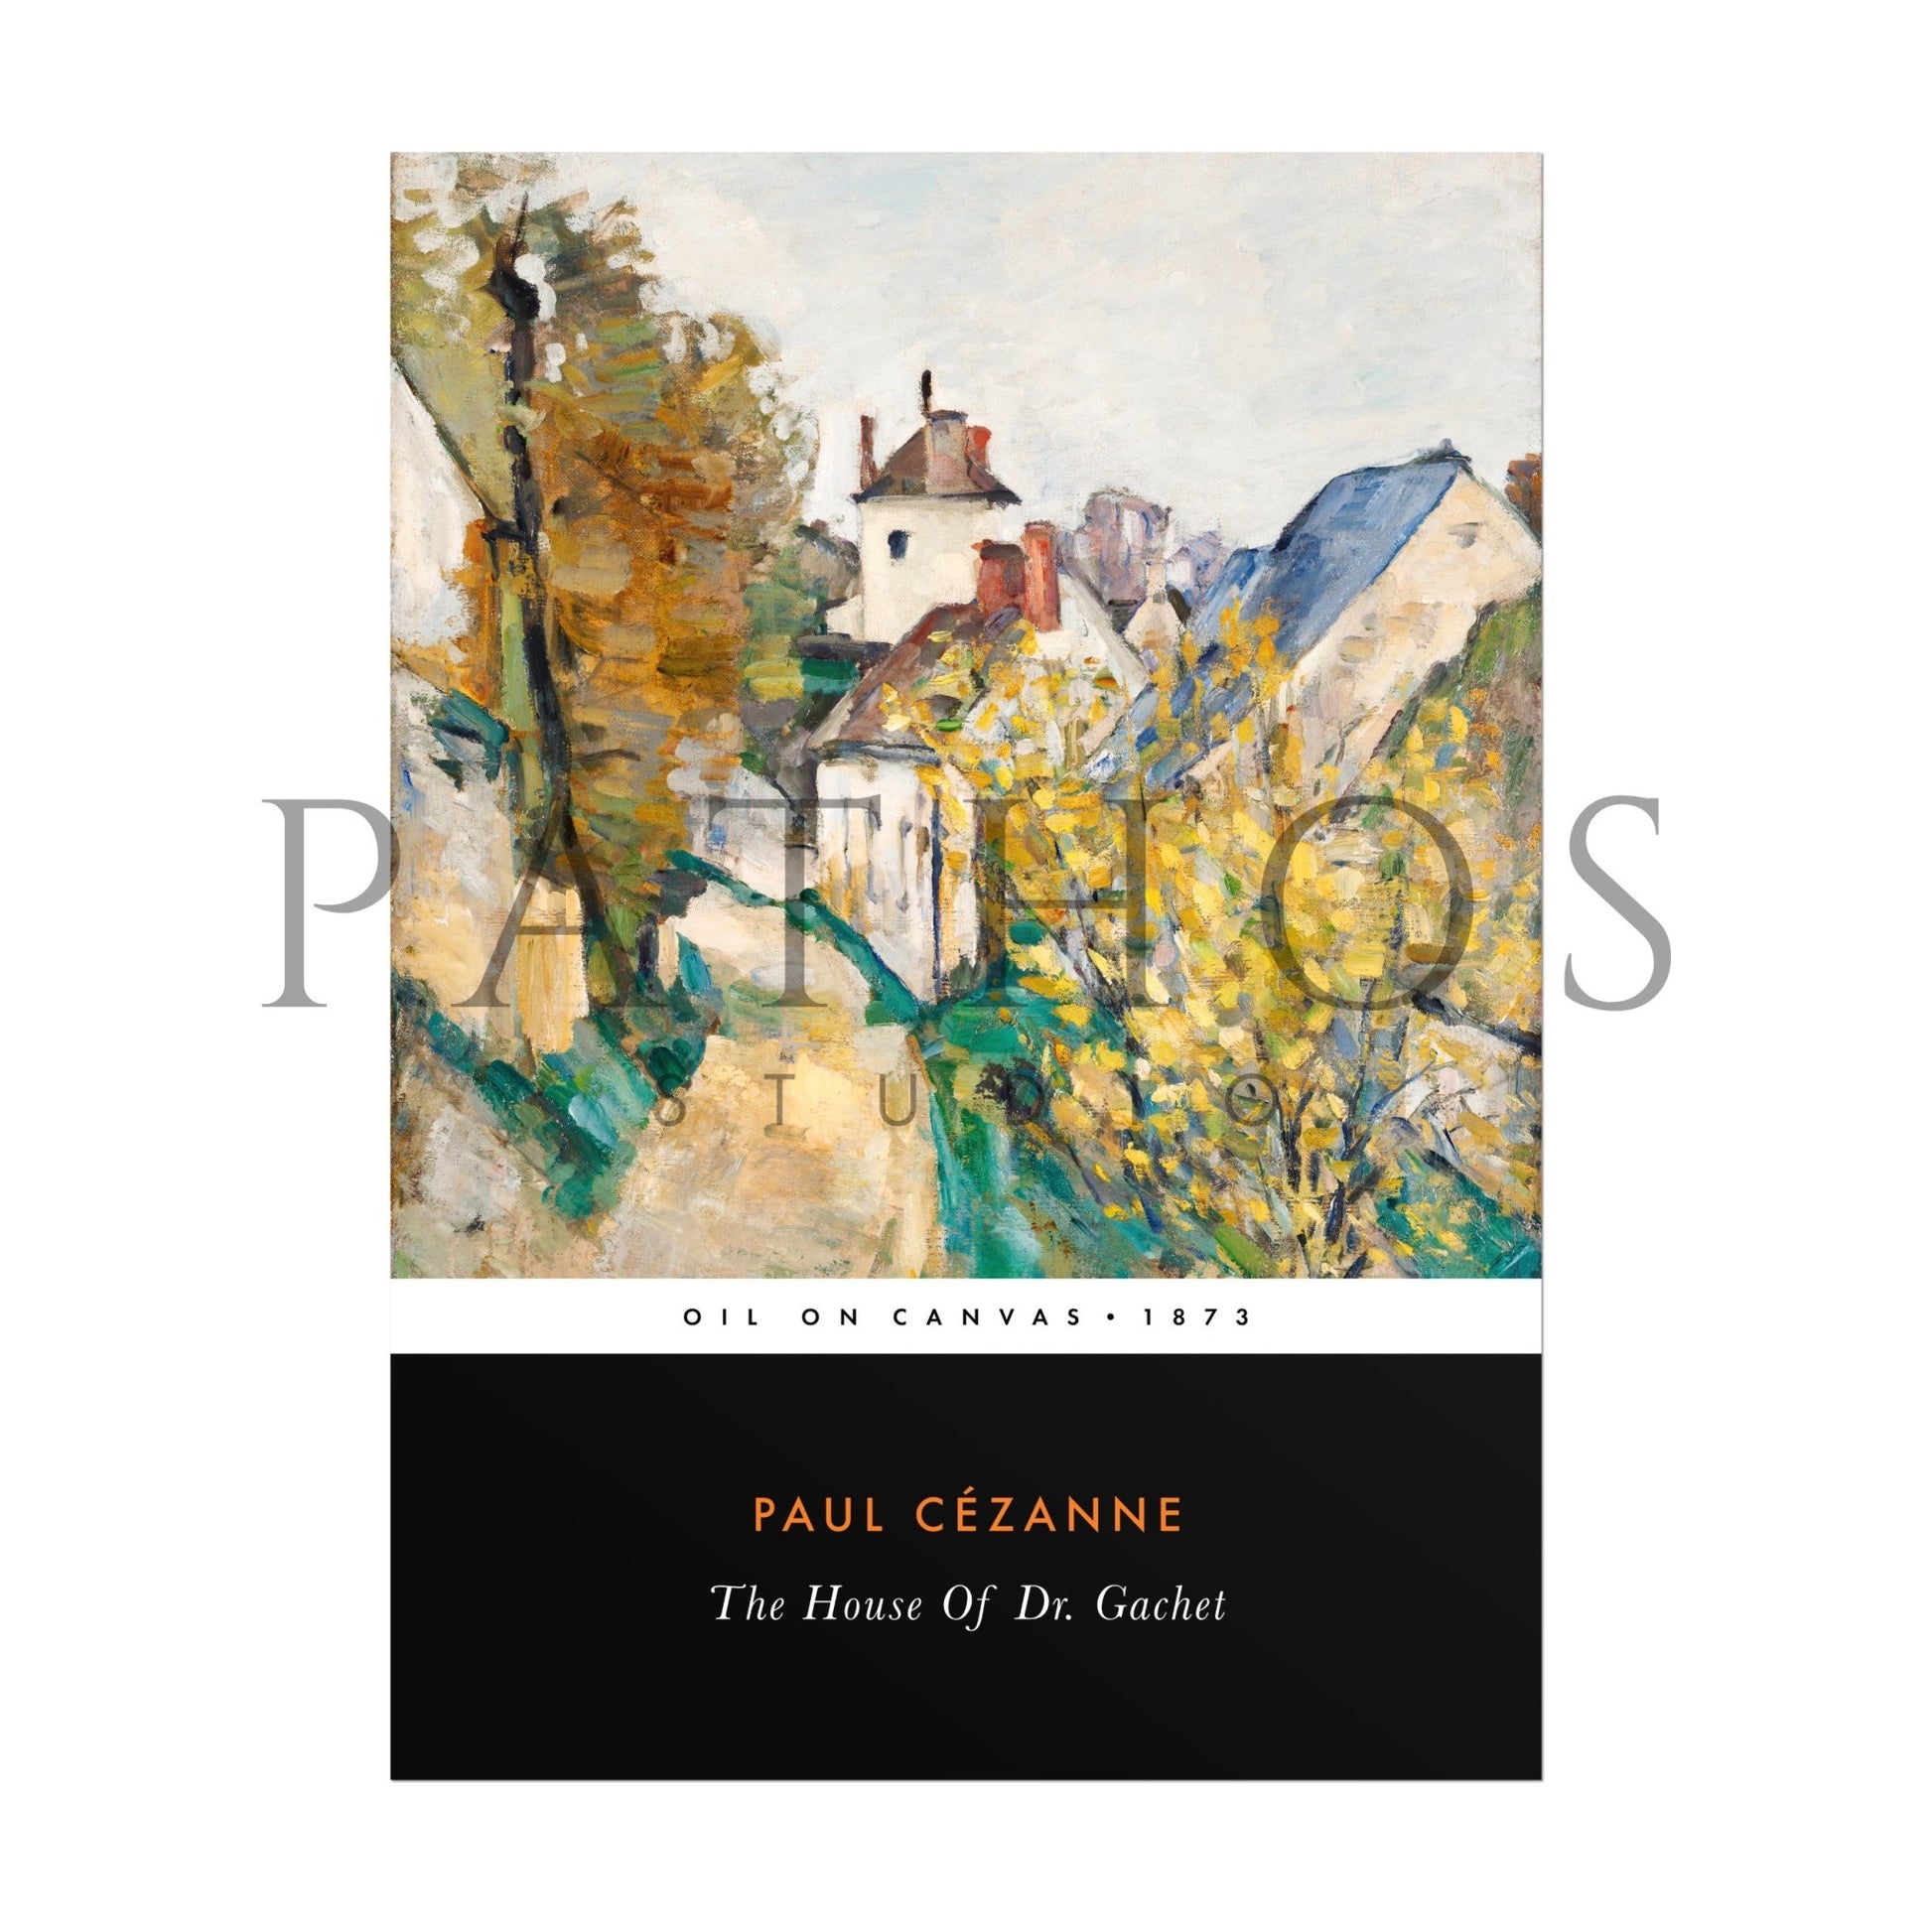 PAUL CÉZANNE - The House Of Dr. Gachet (Vintage Classic Style) - Pathos Studio - Art Prints